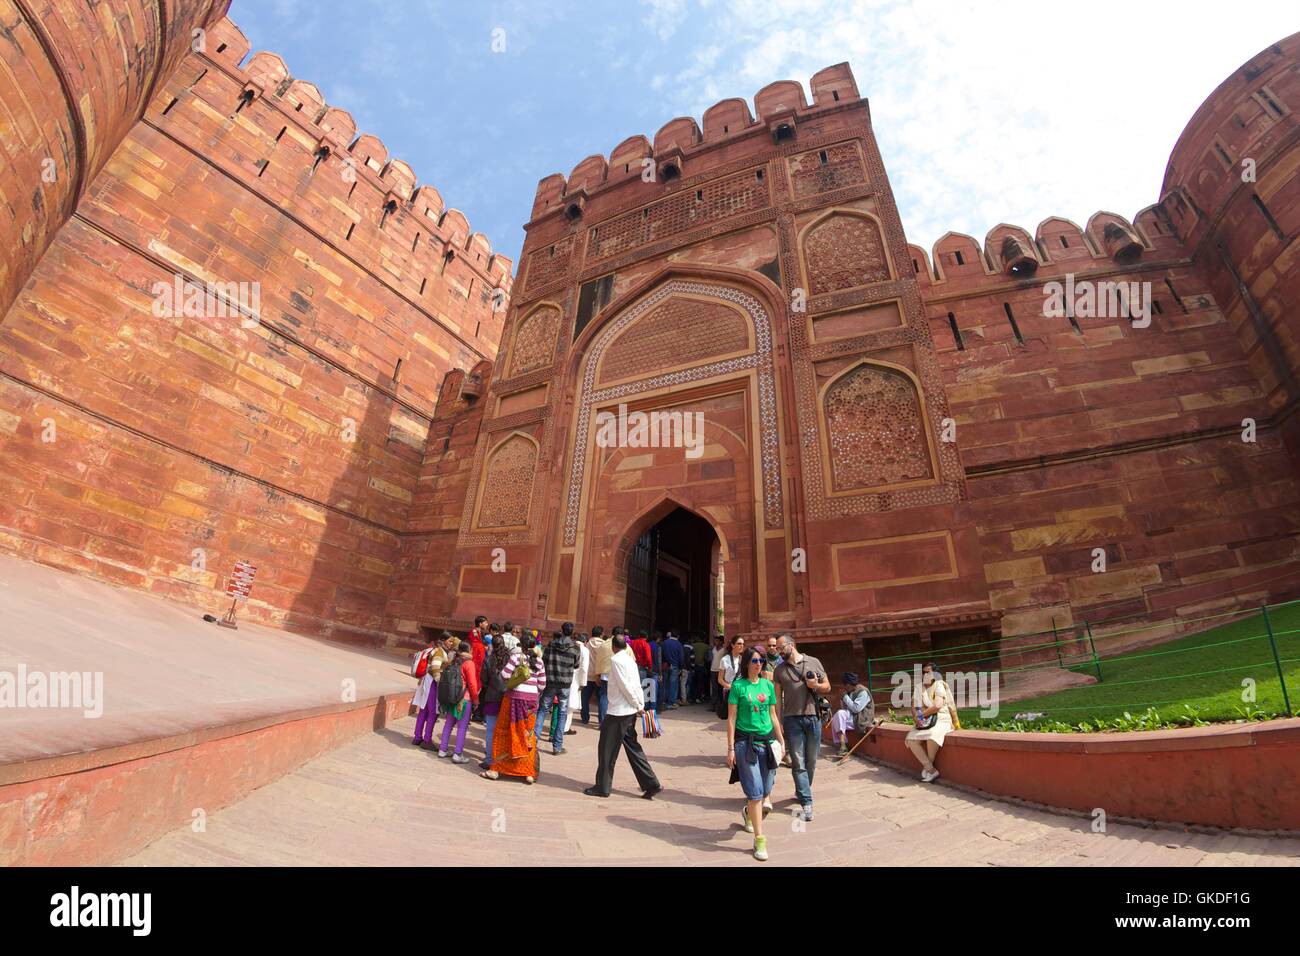 Puerta de Delhi, el Fuerte Rojo, Agra, sitio del patrimonio mundial de la unesco, Uttar Pradesh, India, Foto de stock